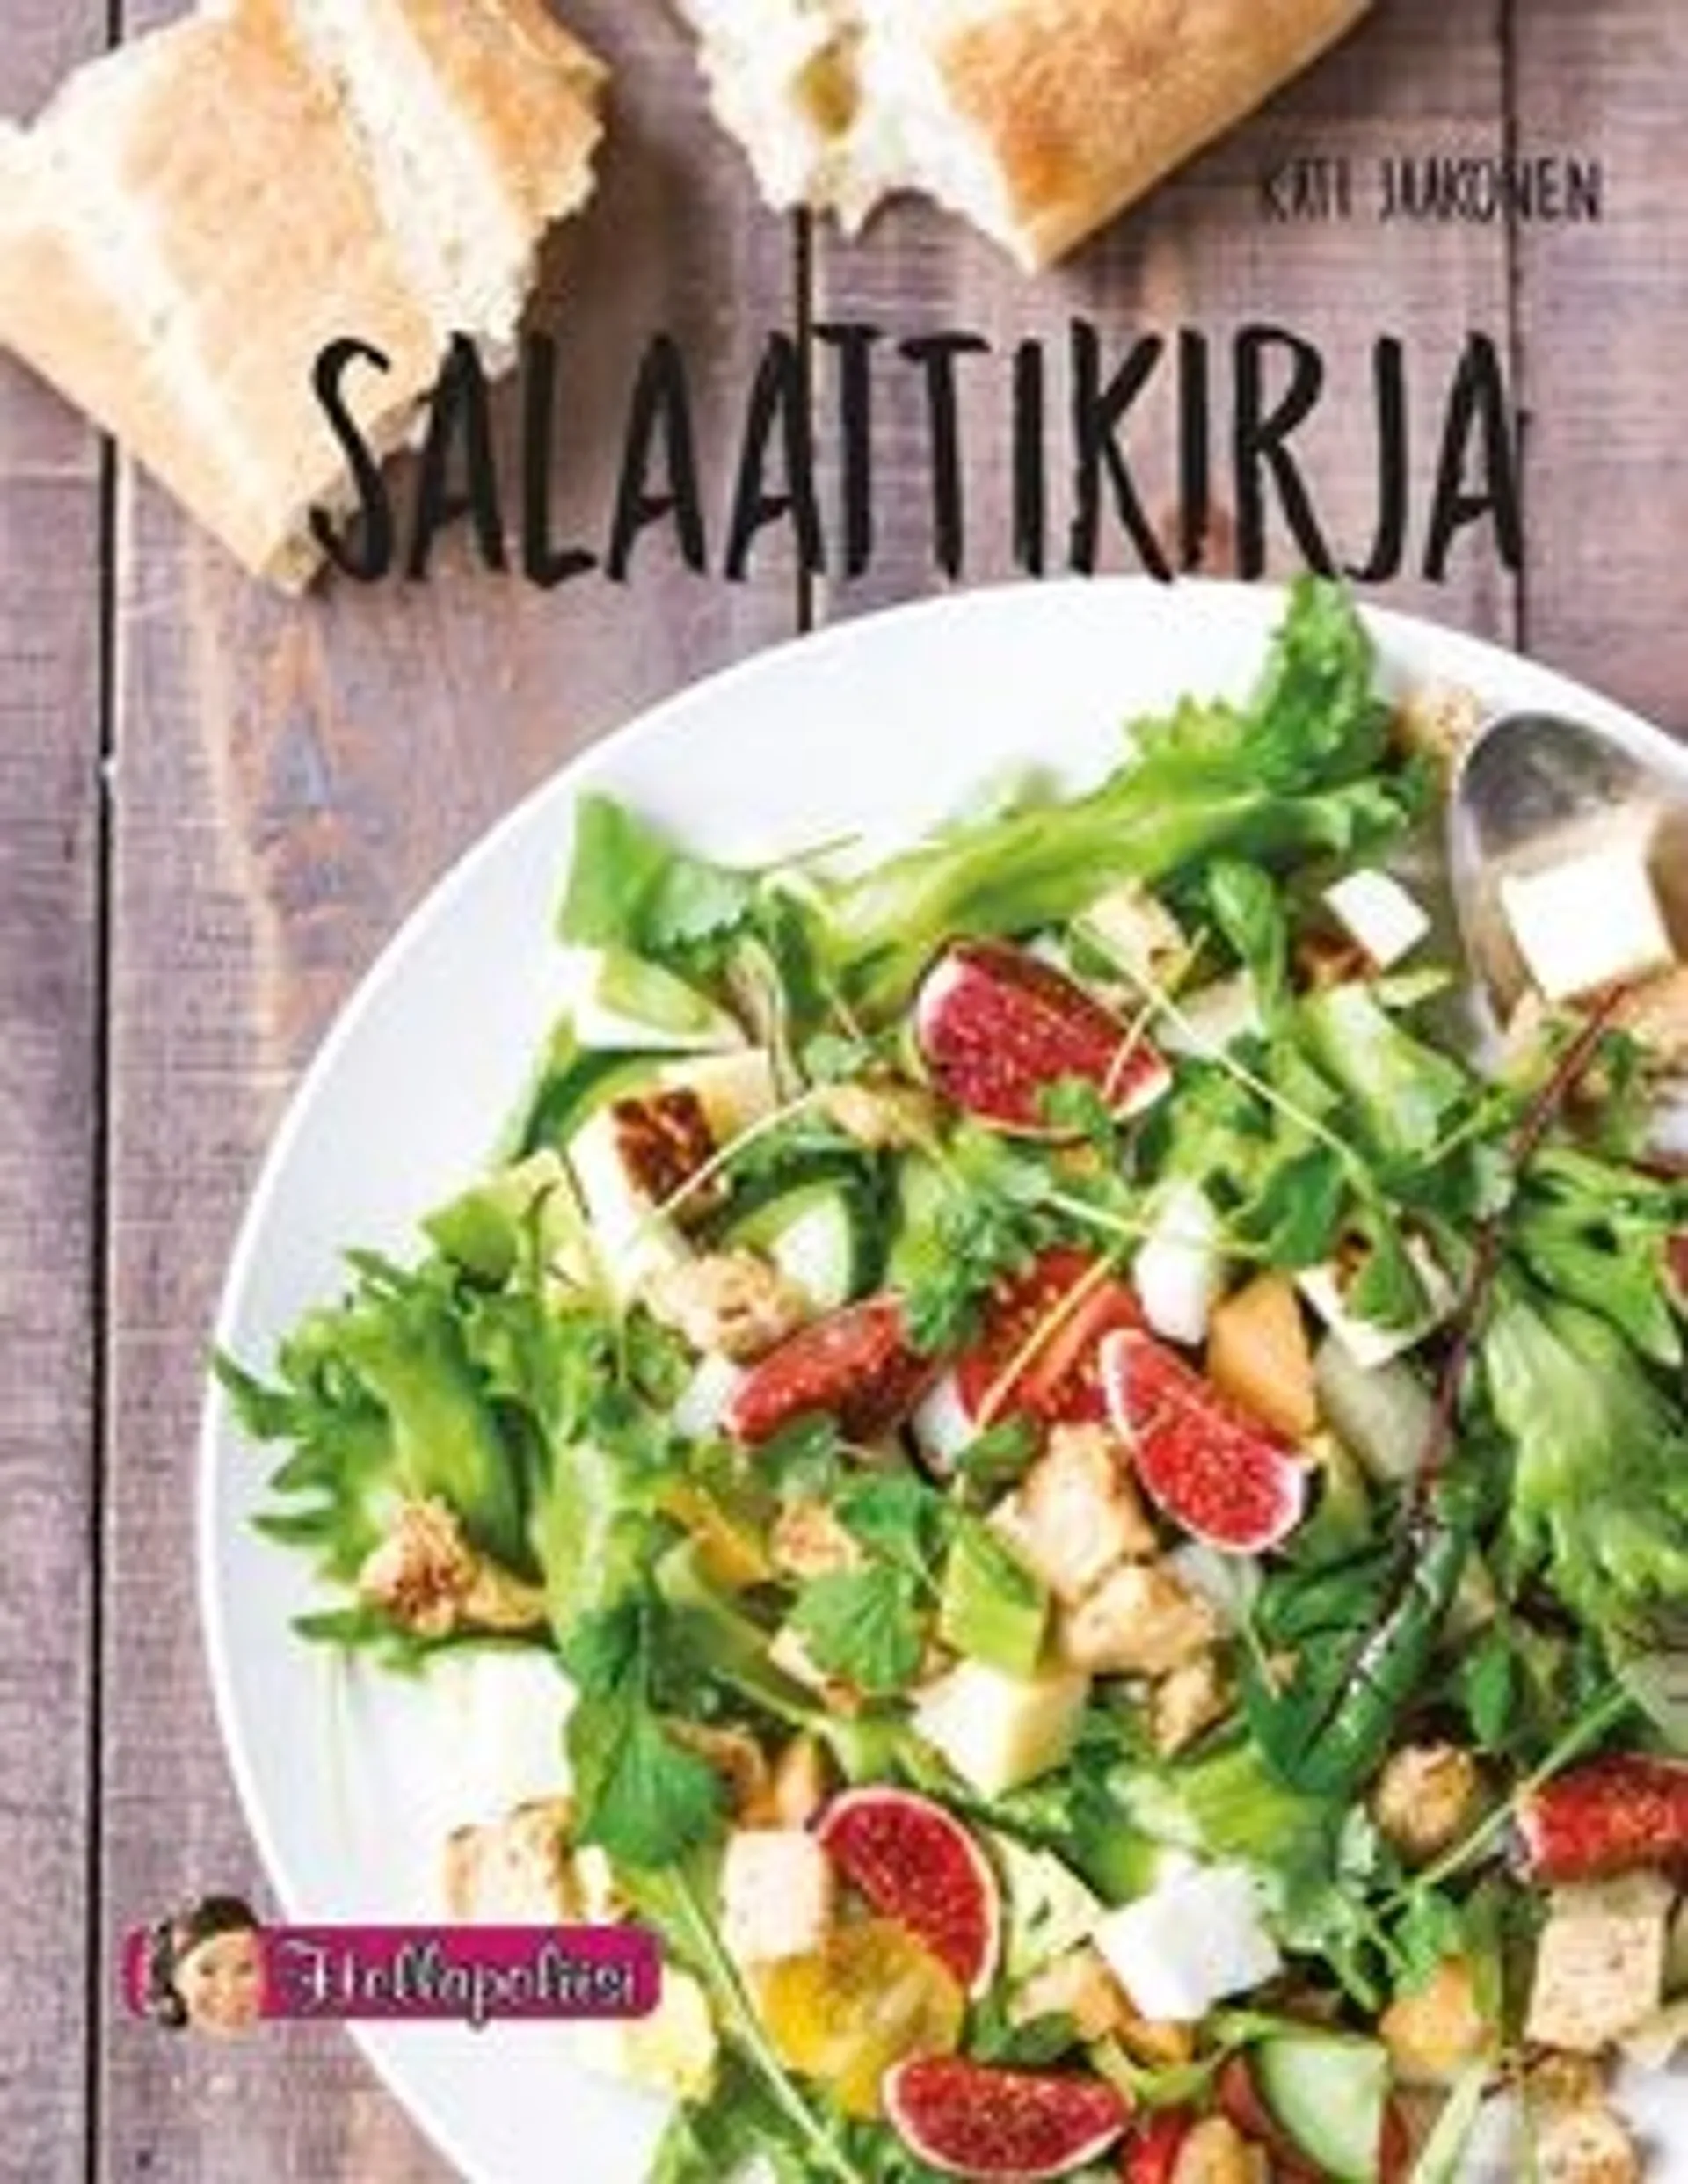 Jaakonen, Salaattikirja